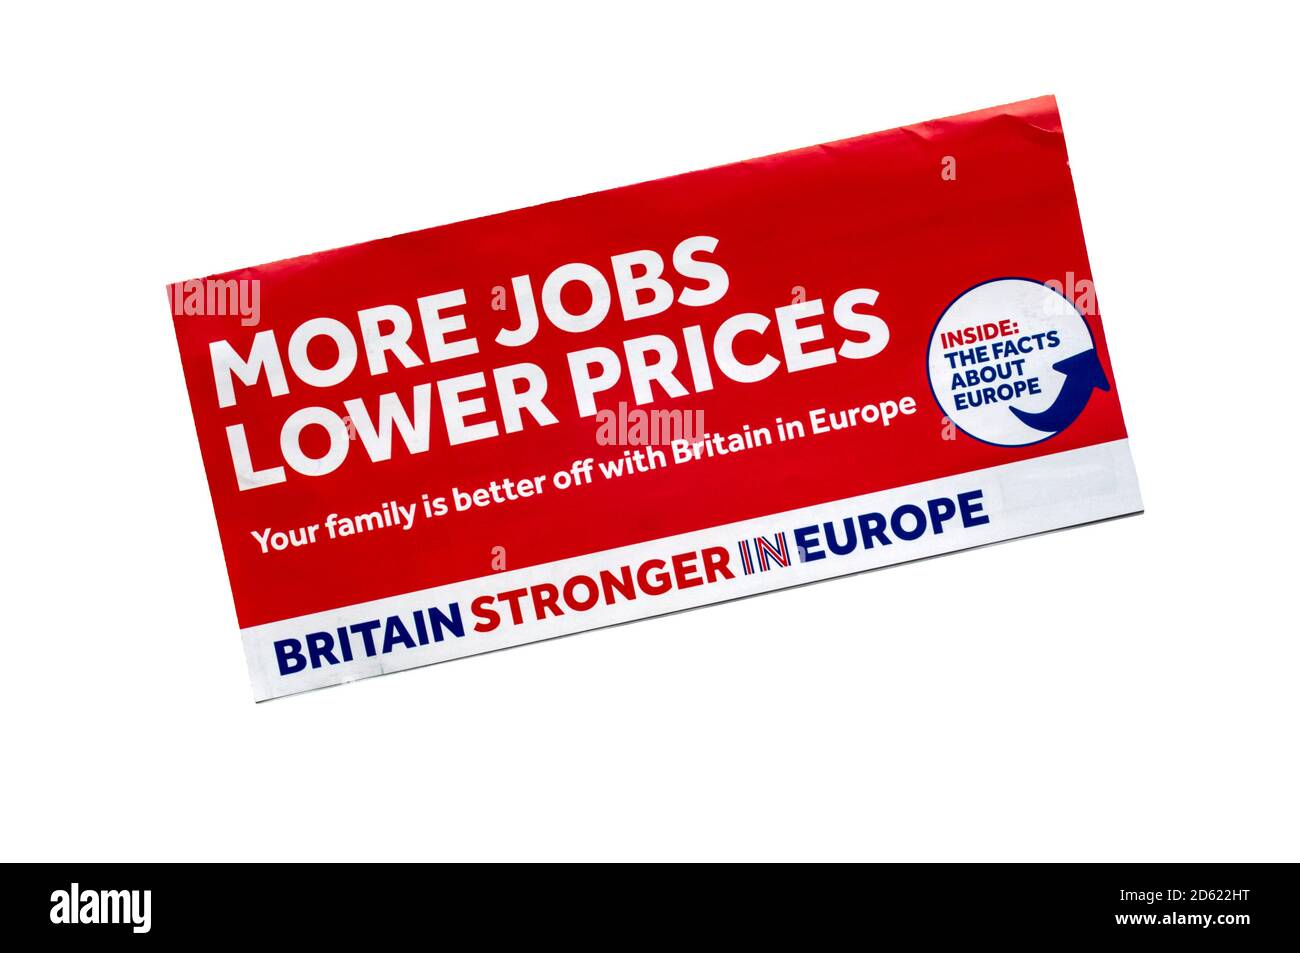 Großbritannien stärker in Europa das Flugblatt sagt, dass Familien besser mit Großbritannien in Europa abgestellt sein werden. Ein Anti-brexit-Flugblatt. Stockfoto